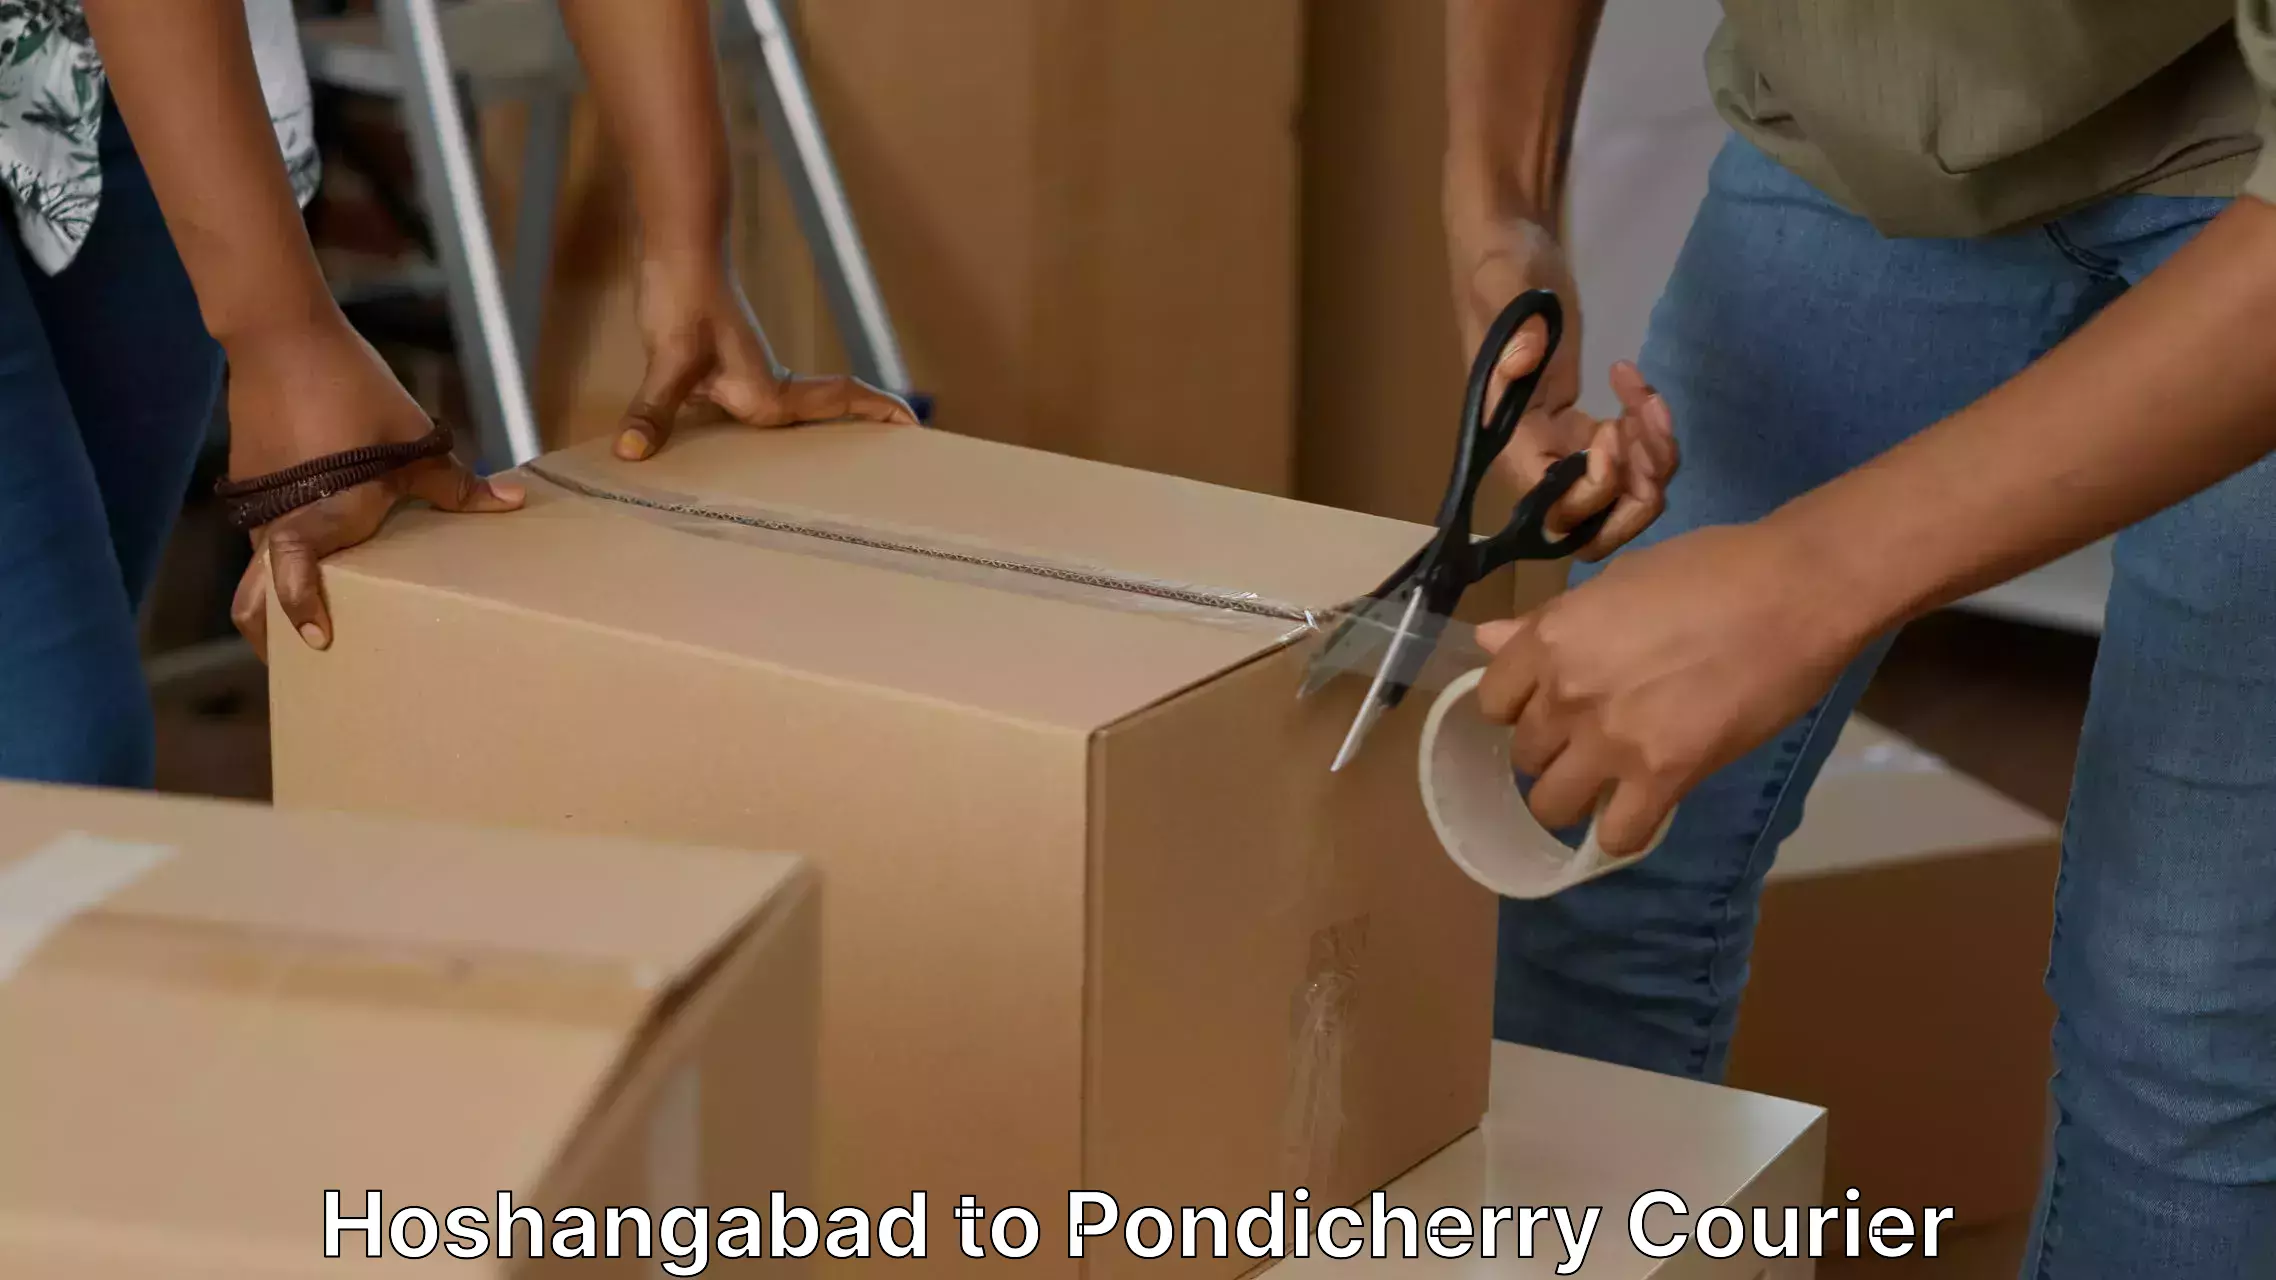 Professional moving company Hoshangabad to Pondicherry